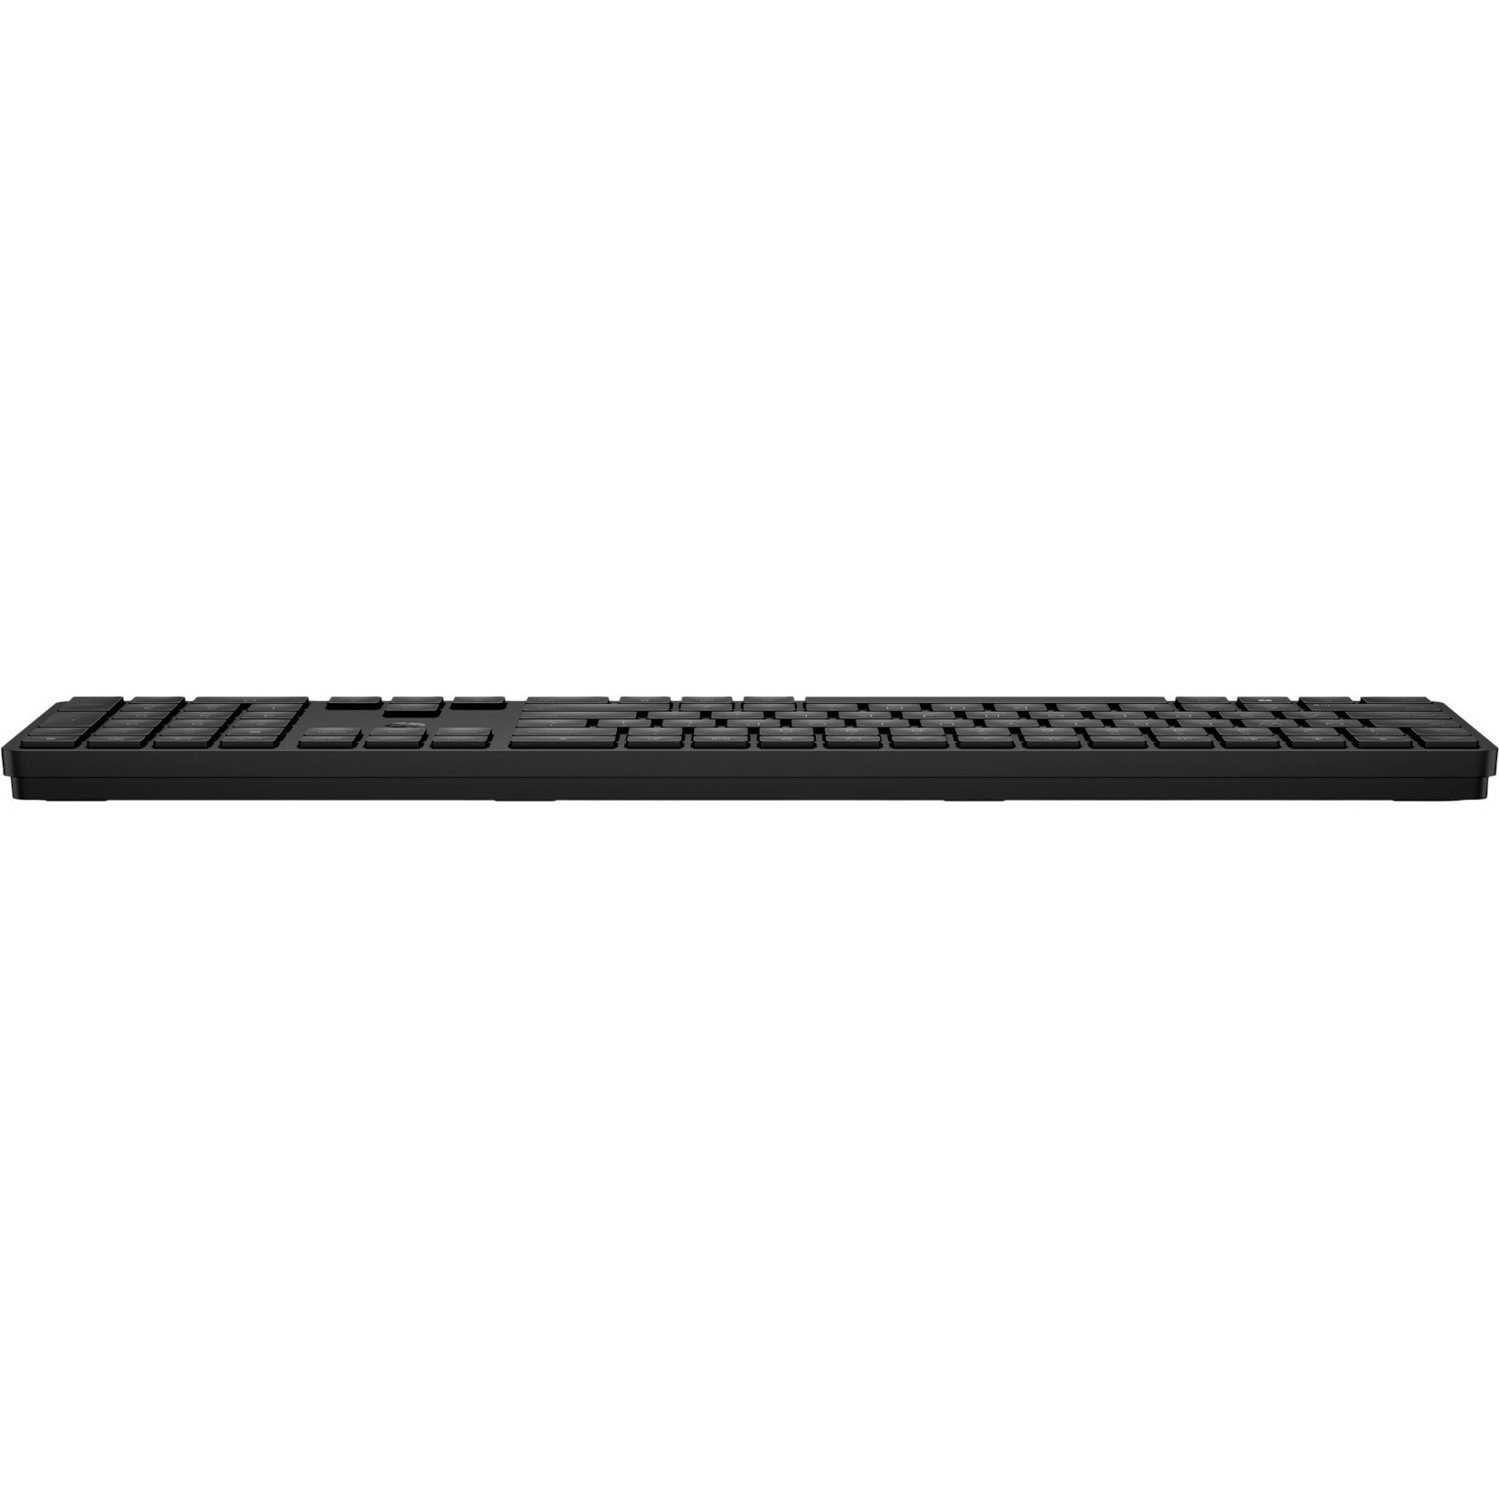 HP 455 Programmable Wireless Keyboard